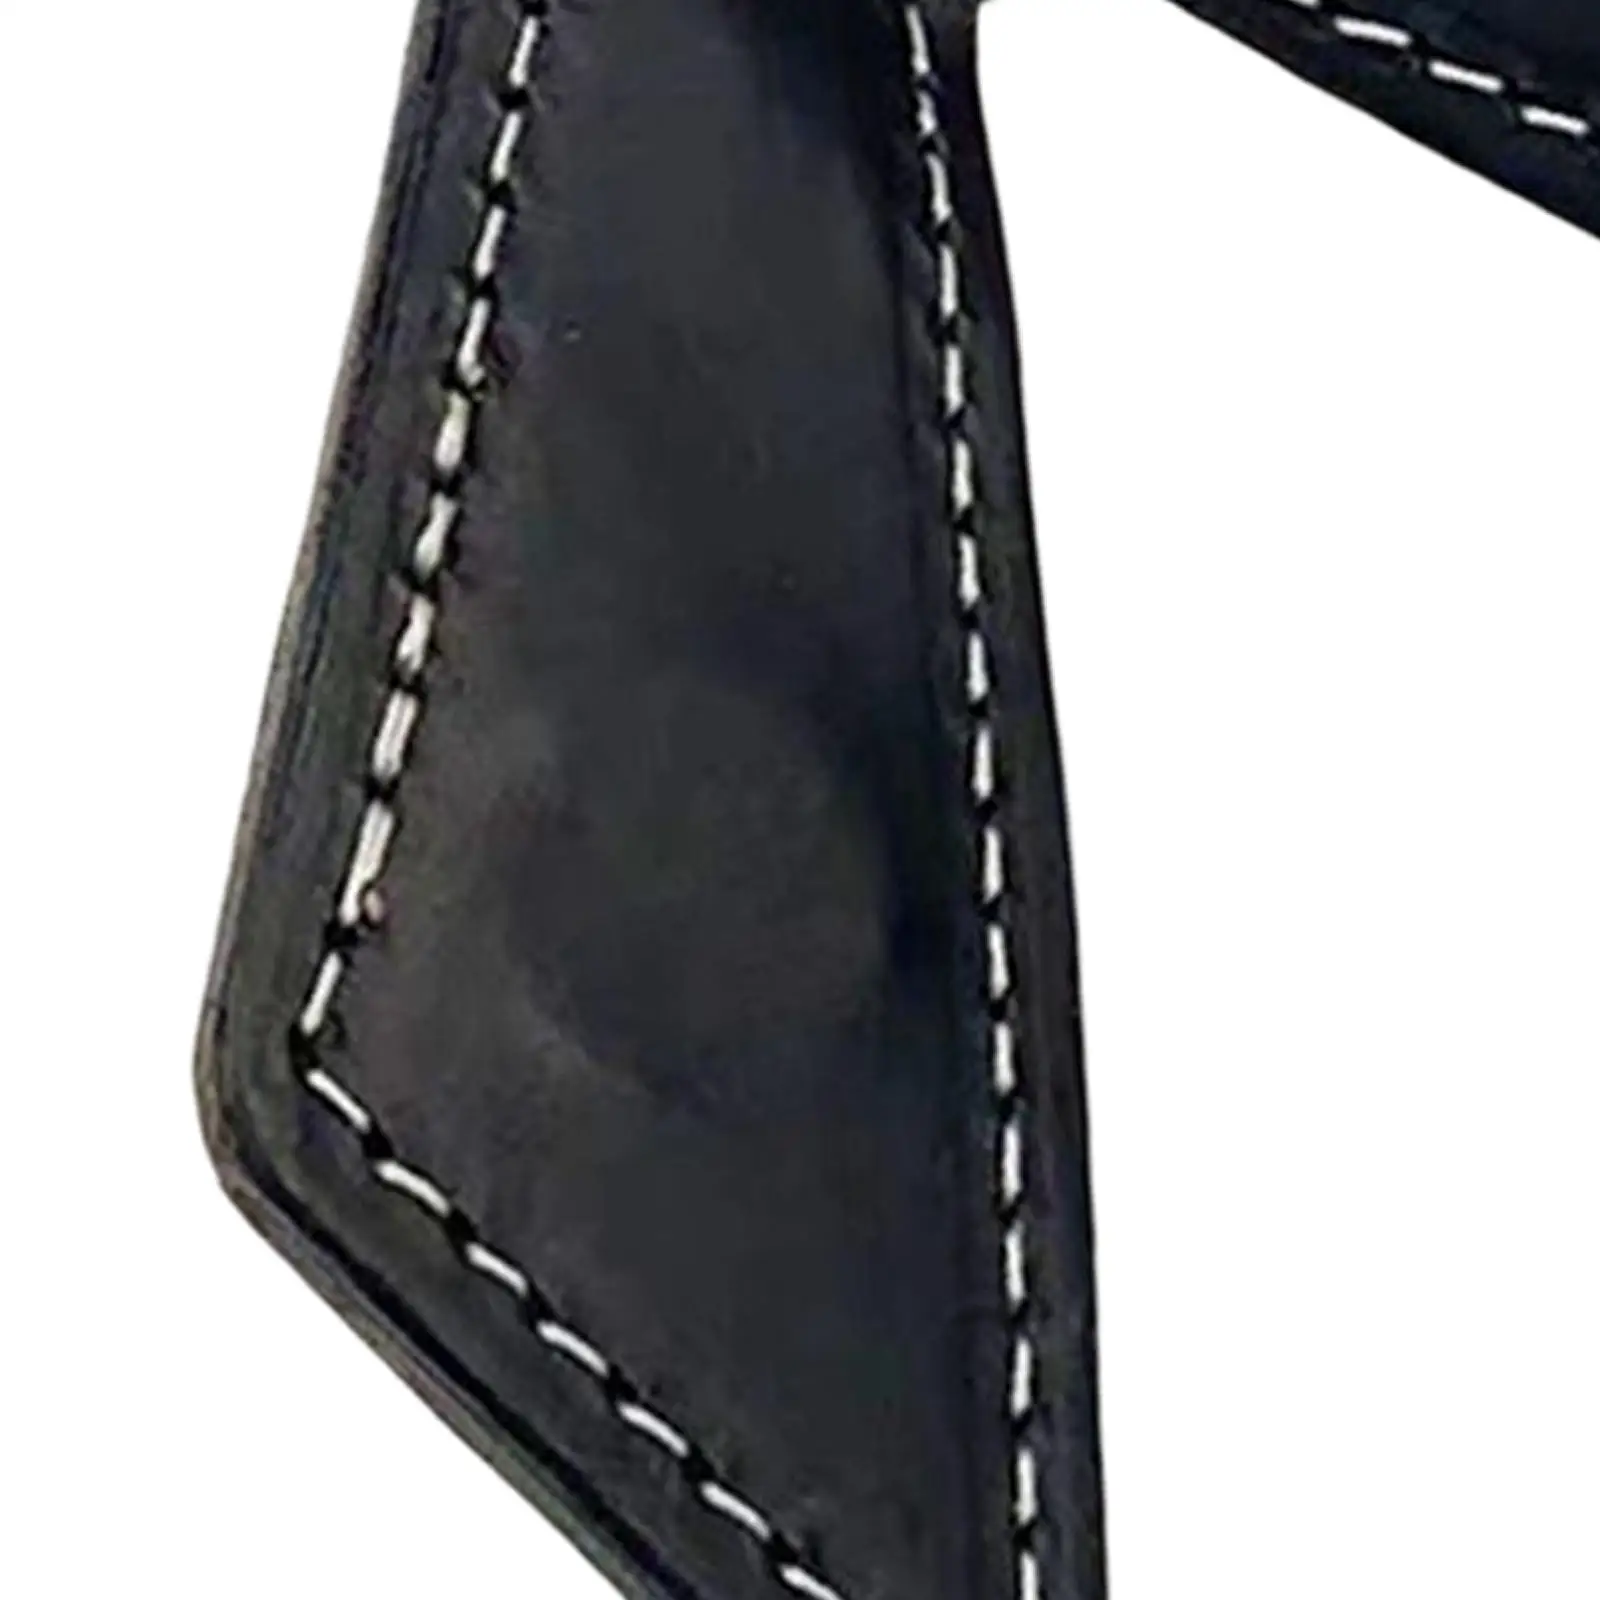  Trouser Pocket Chalk Clip Compact Chalk Case Clip Billiard Chalk Holder Portable for Snooker Sports Billiard Accessory